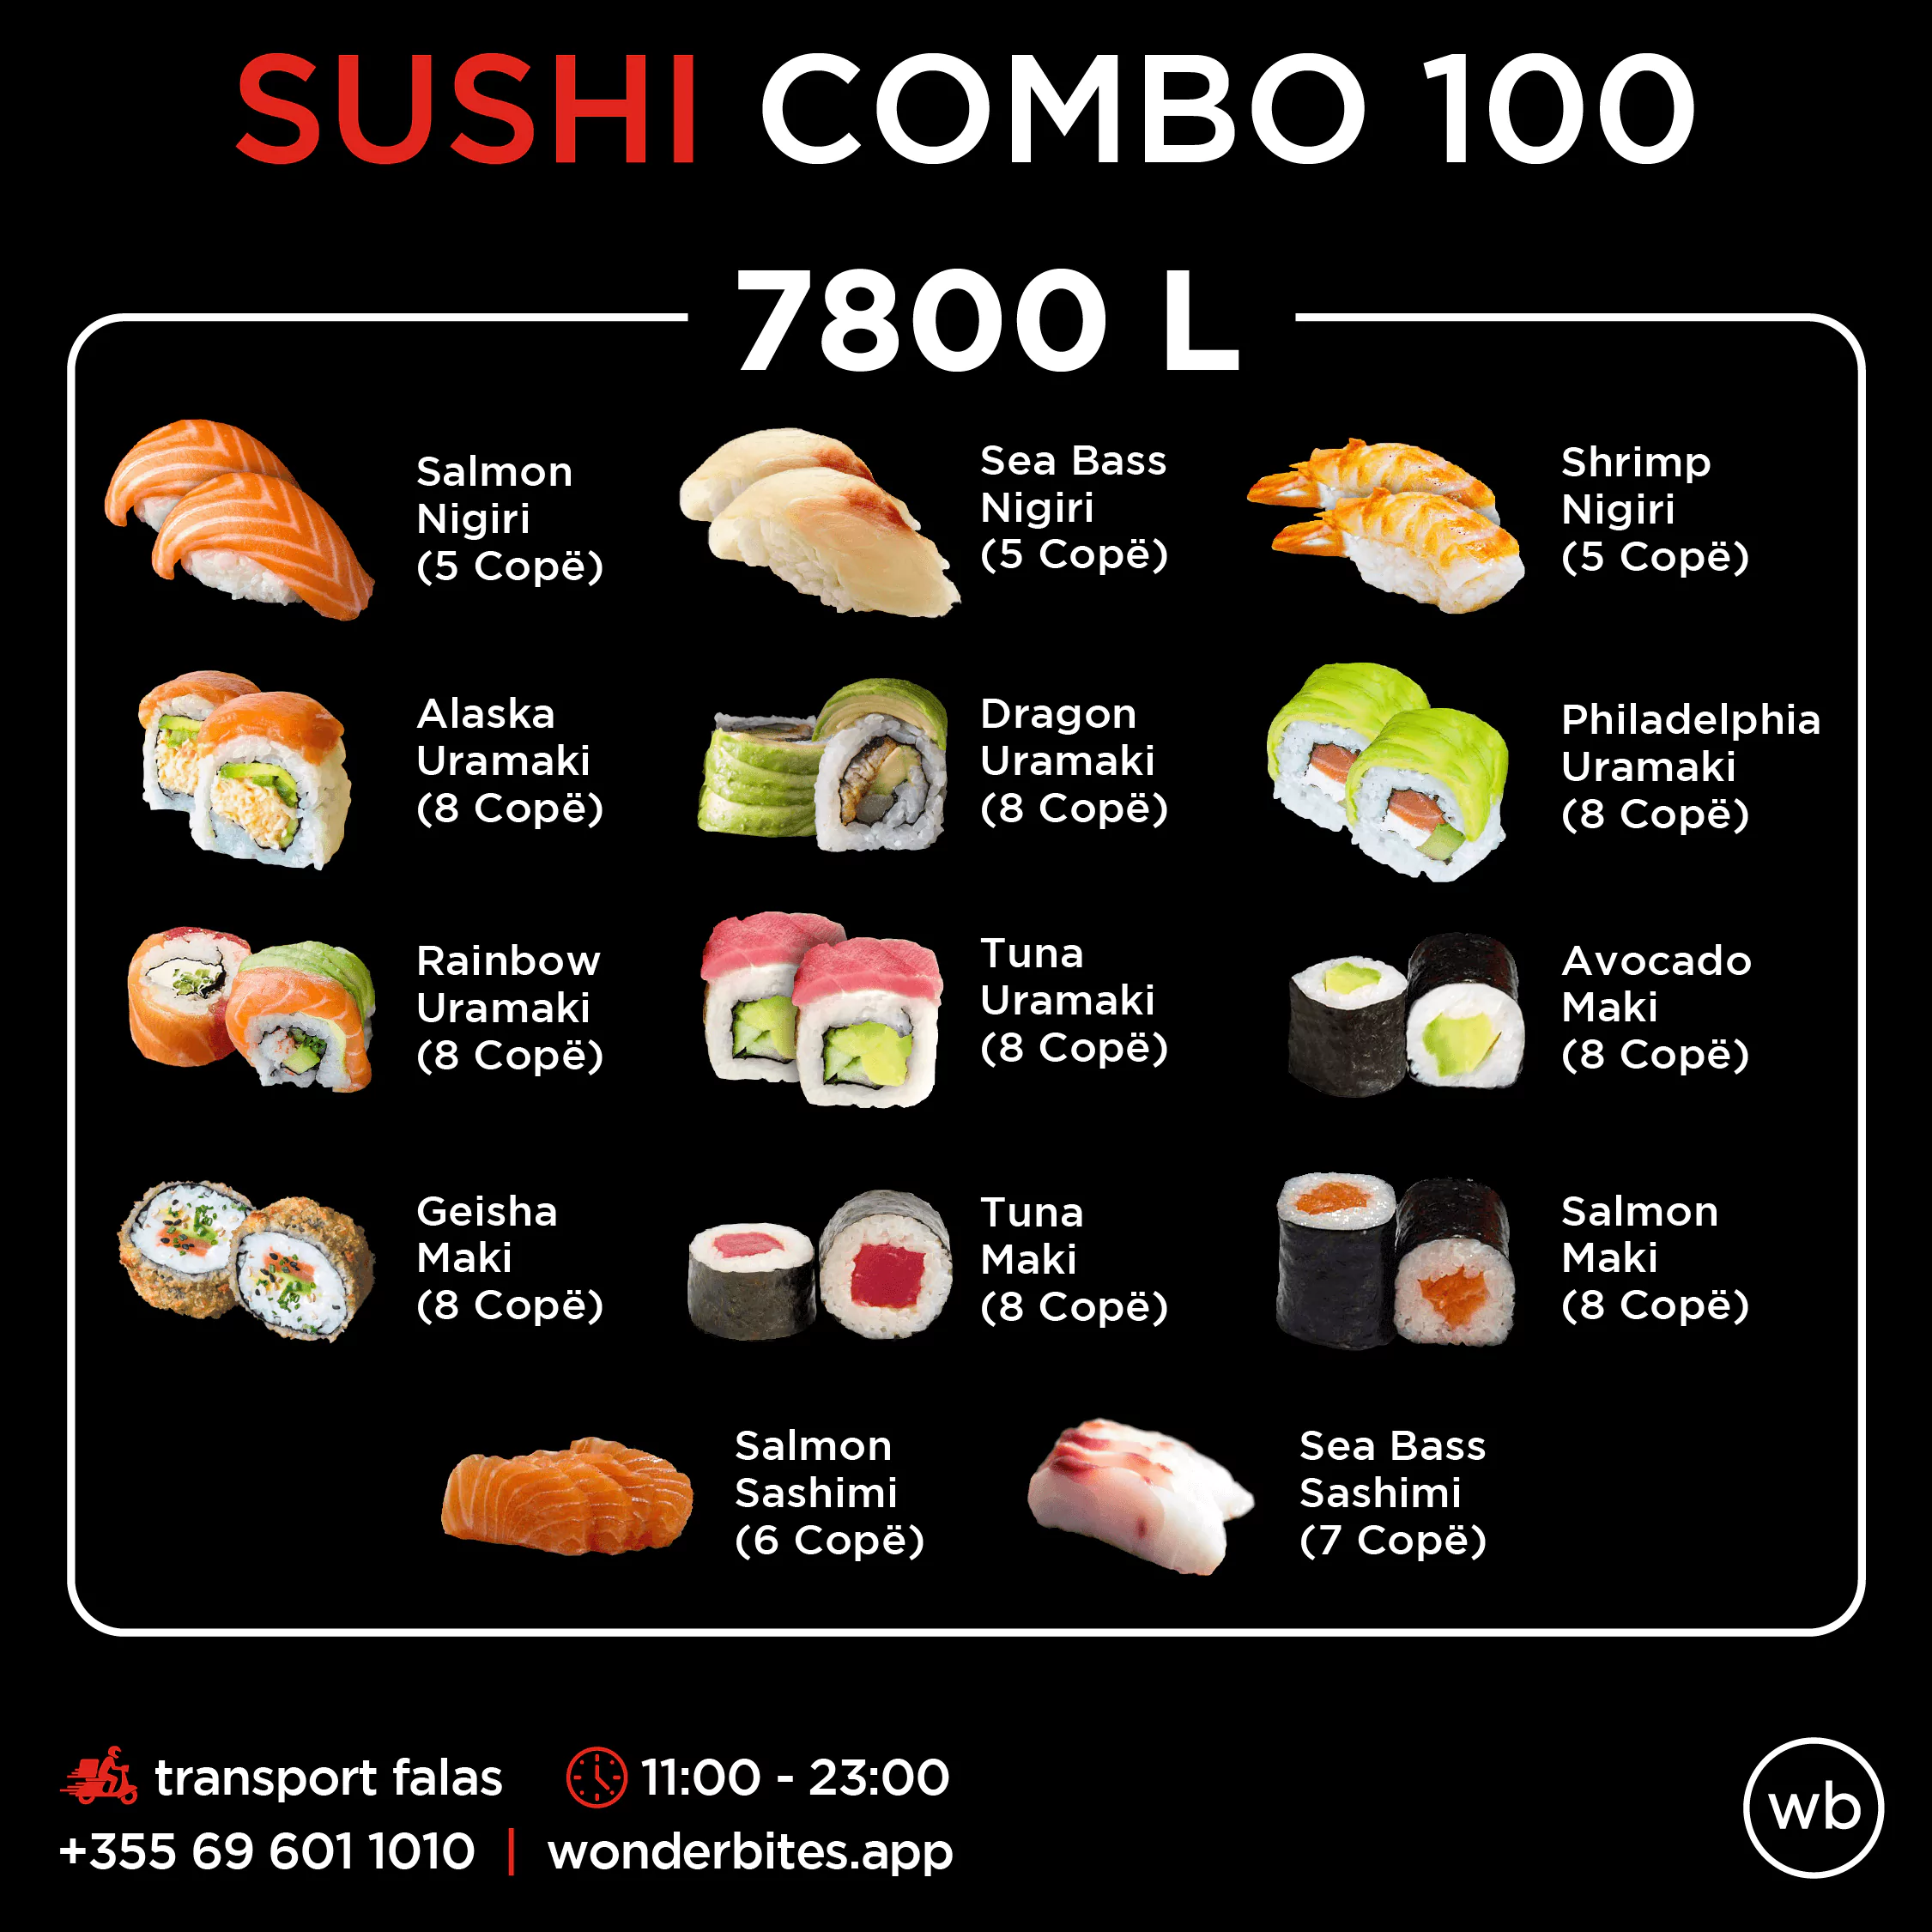 Sushi combo 100-7800L